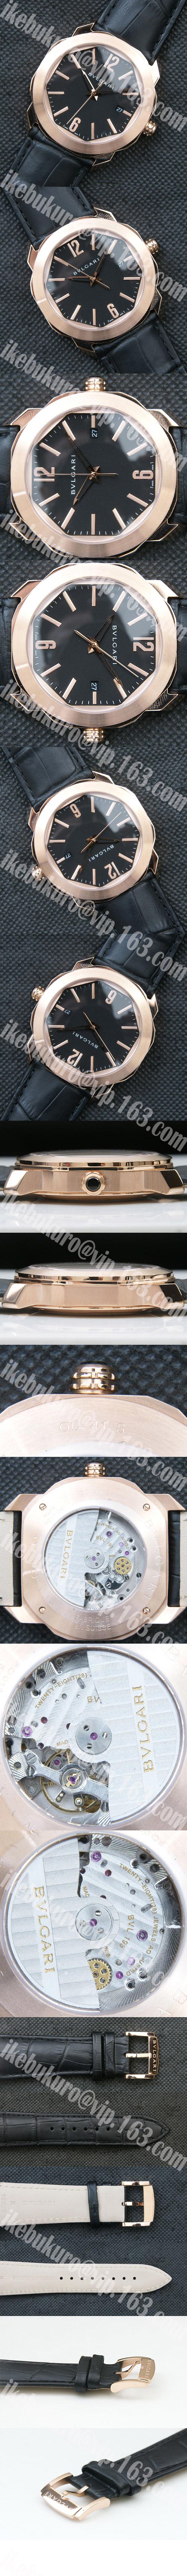 【特典詳細】【41mm】ブルガリ BGO41BSLD ブランドコピー時計